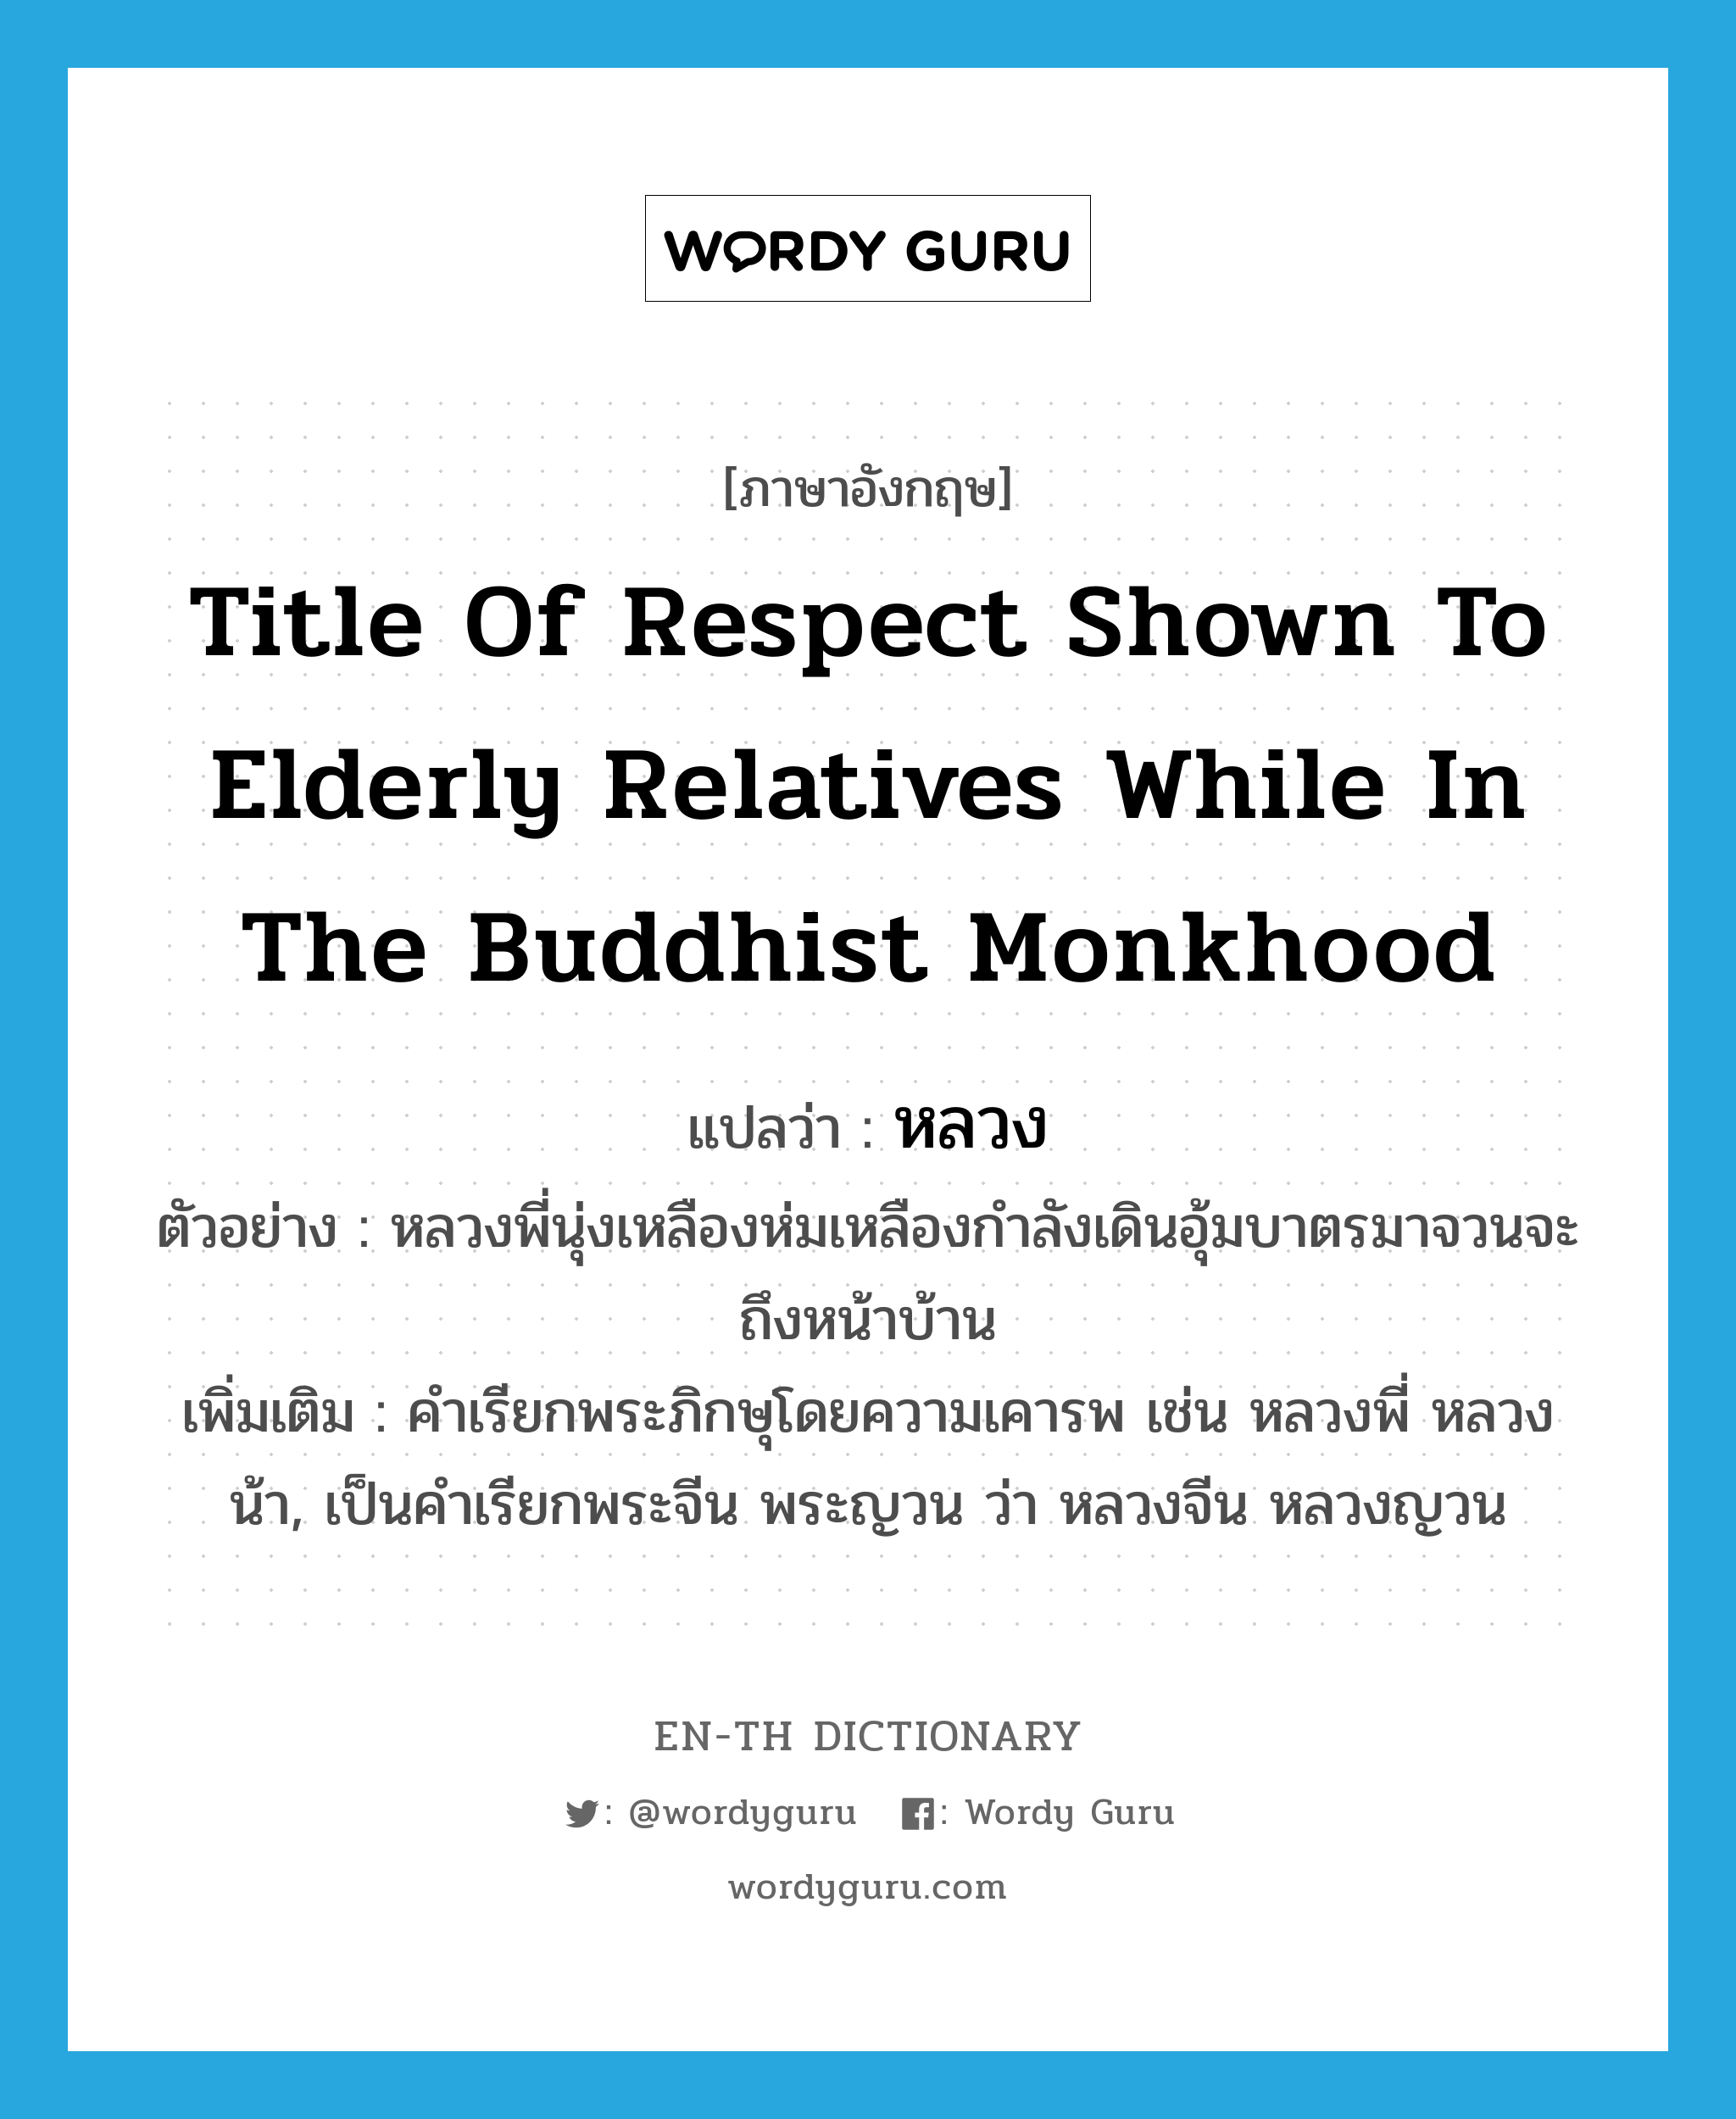 หลวง ภาษาอังกฤษ?, คำศัพท์ภาษาอังกฤษ หลวง แปลว่า title of respect shown to elderly relatives while in the Buddhist monkhood ประเภท N ตัวอย่าง หลวงพี่นุ่งเหลืองห่มเหลืองกำลังเดินอุ้มบาตรมาจวนจะถึงหน้าบ้าน เพิ่มเติม คำเรียกพระภิกษุโดยความเคารพ เช่น หลวงพี่ หลวงน้า, เป็นคำเรียกพระจีน พระญวน ว่า หลวงจีน หลวงญวน หมวด N